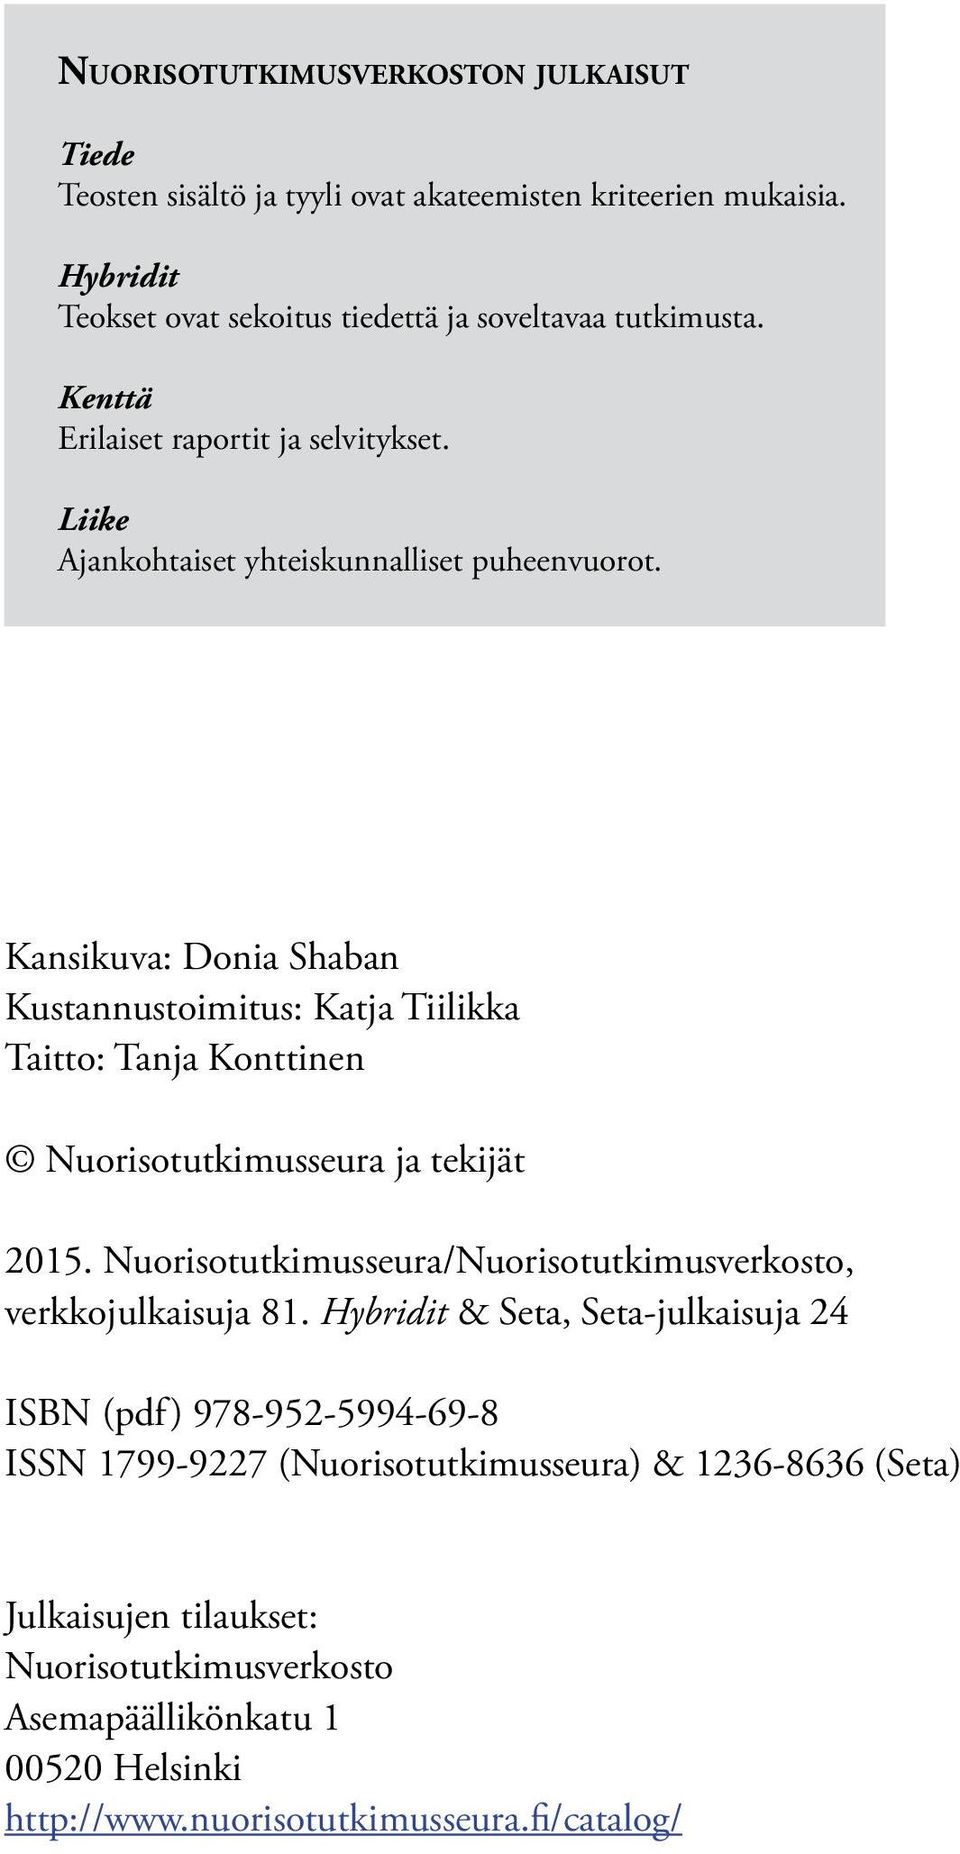 Kansikuva: Donia Shaban Kustannustoimitus: Katja Tiilikka Taitto: Tanja Konttinen Nuorisotutkimusseura ja tekijät 2015.